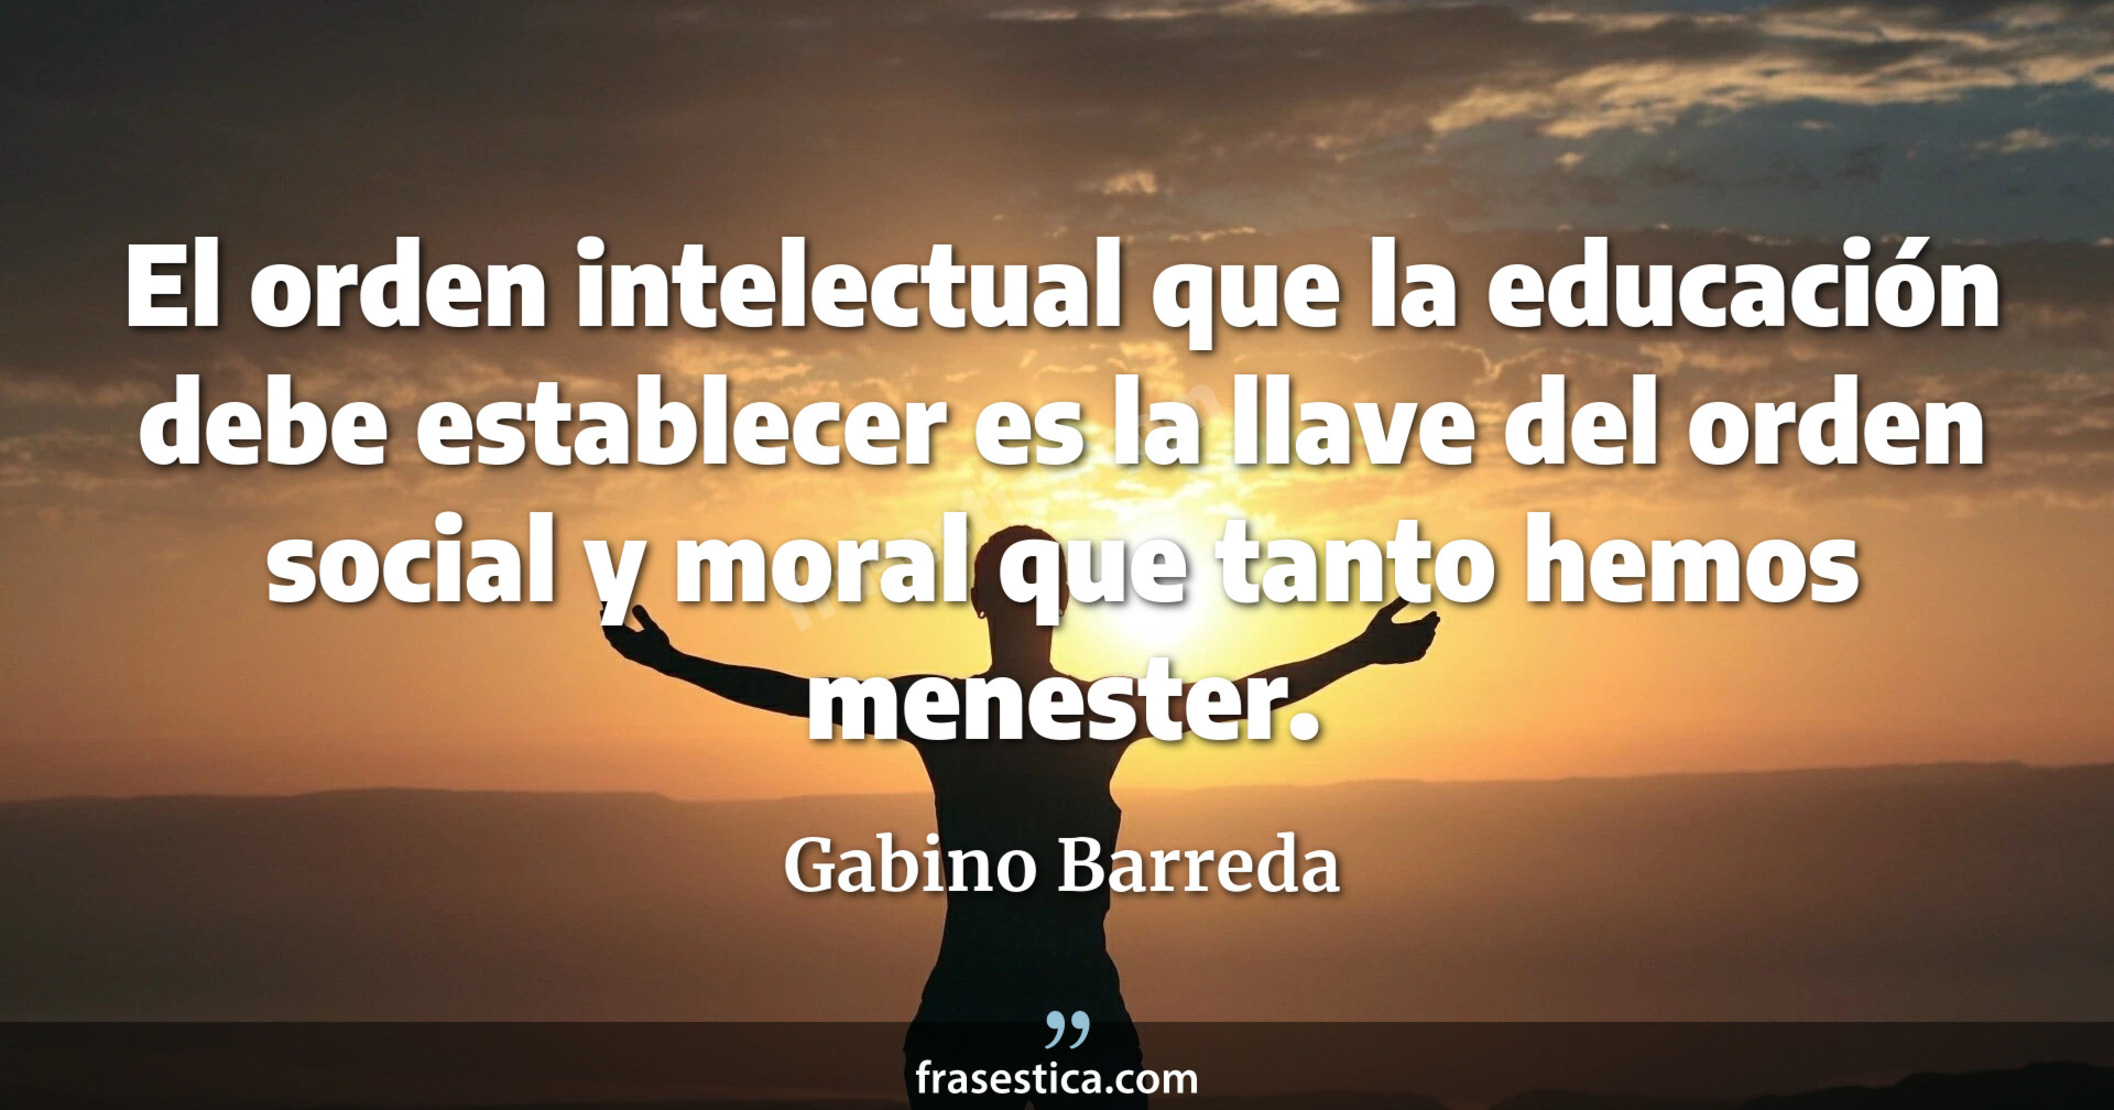 El orden intelectual que la educación debe establecer es la llave del orden social y moral que tanto hemos menester. - Gabino Barreda